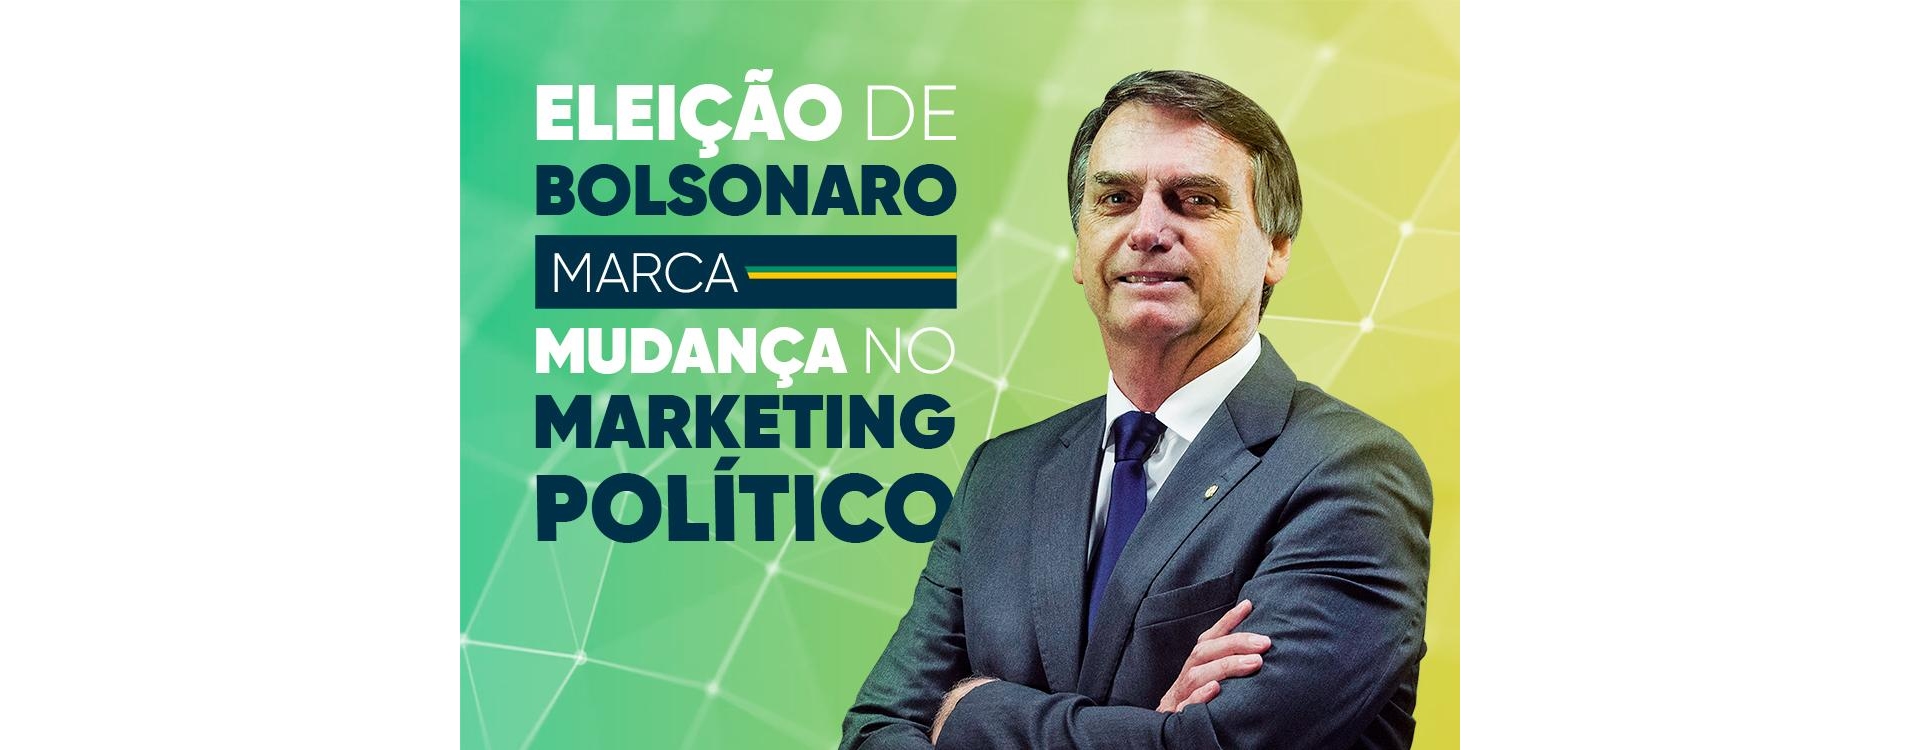 Eleição de Bolsonaro marca mudança no marketing político 